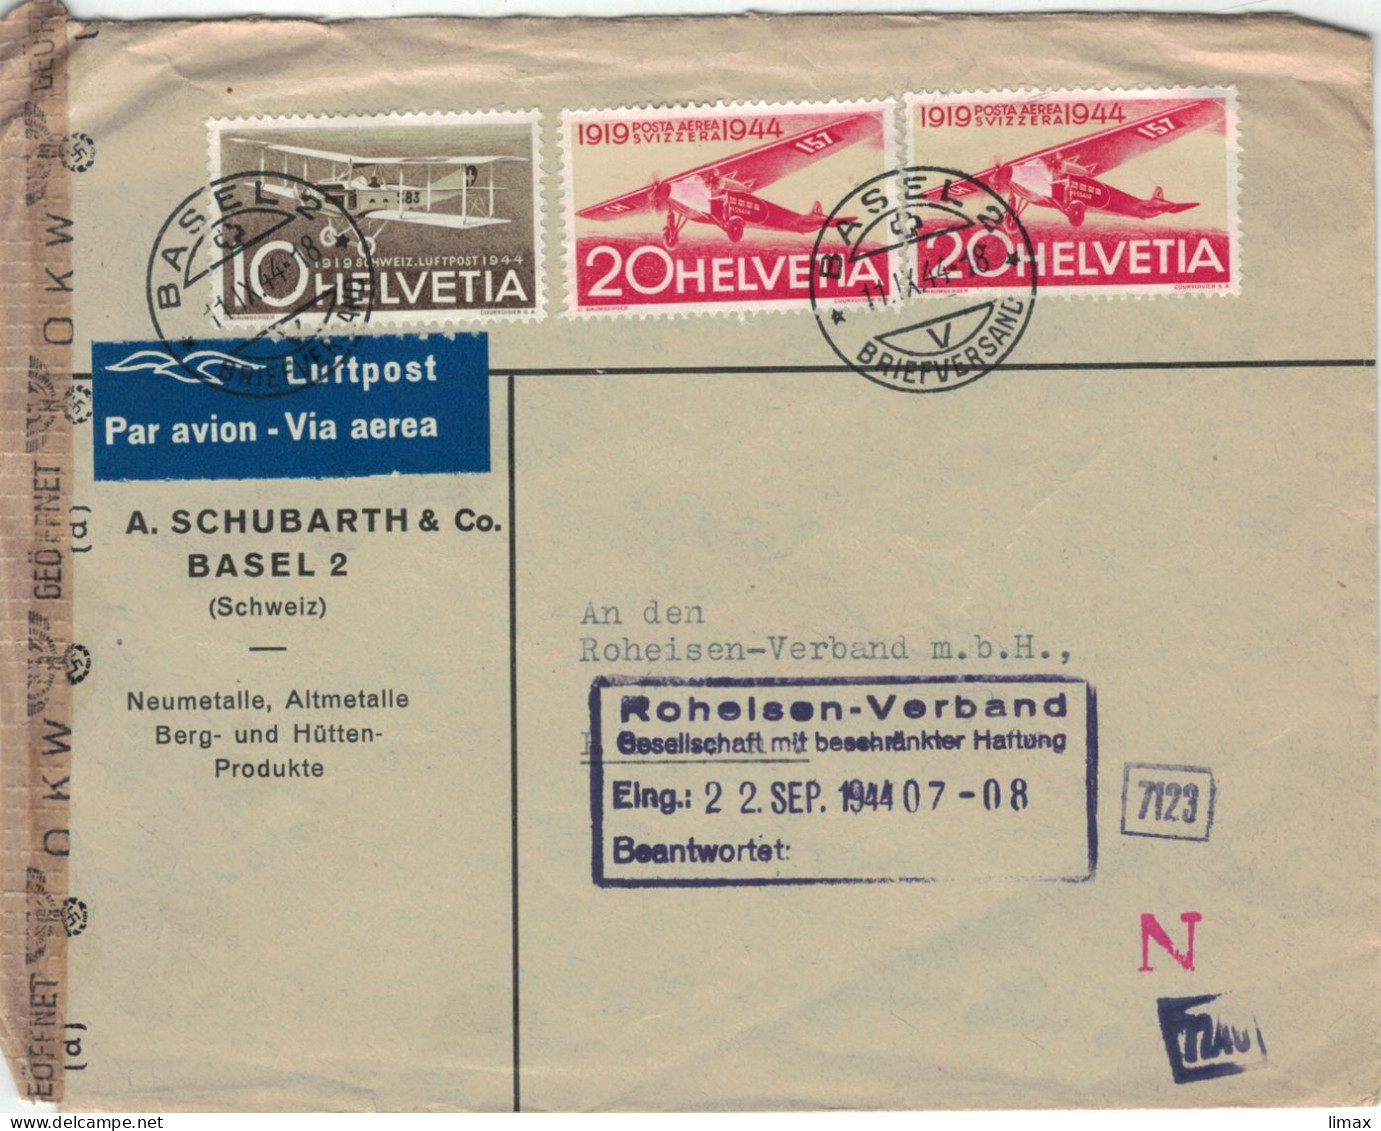 [A5] Schubarth & Co Basel Neumetalle 1944 > Roheisen Verband - Zensur OKW - Luftpost-Marken - Covers & Documents